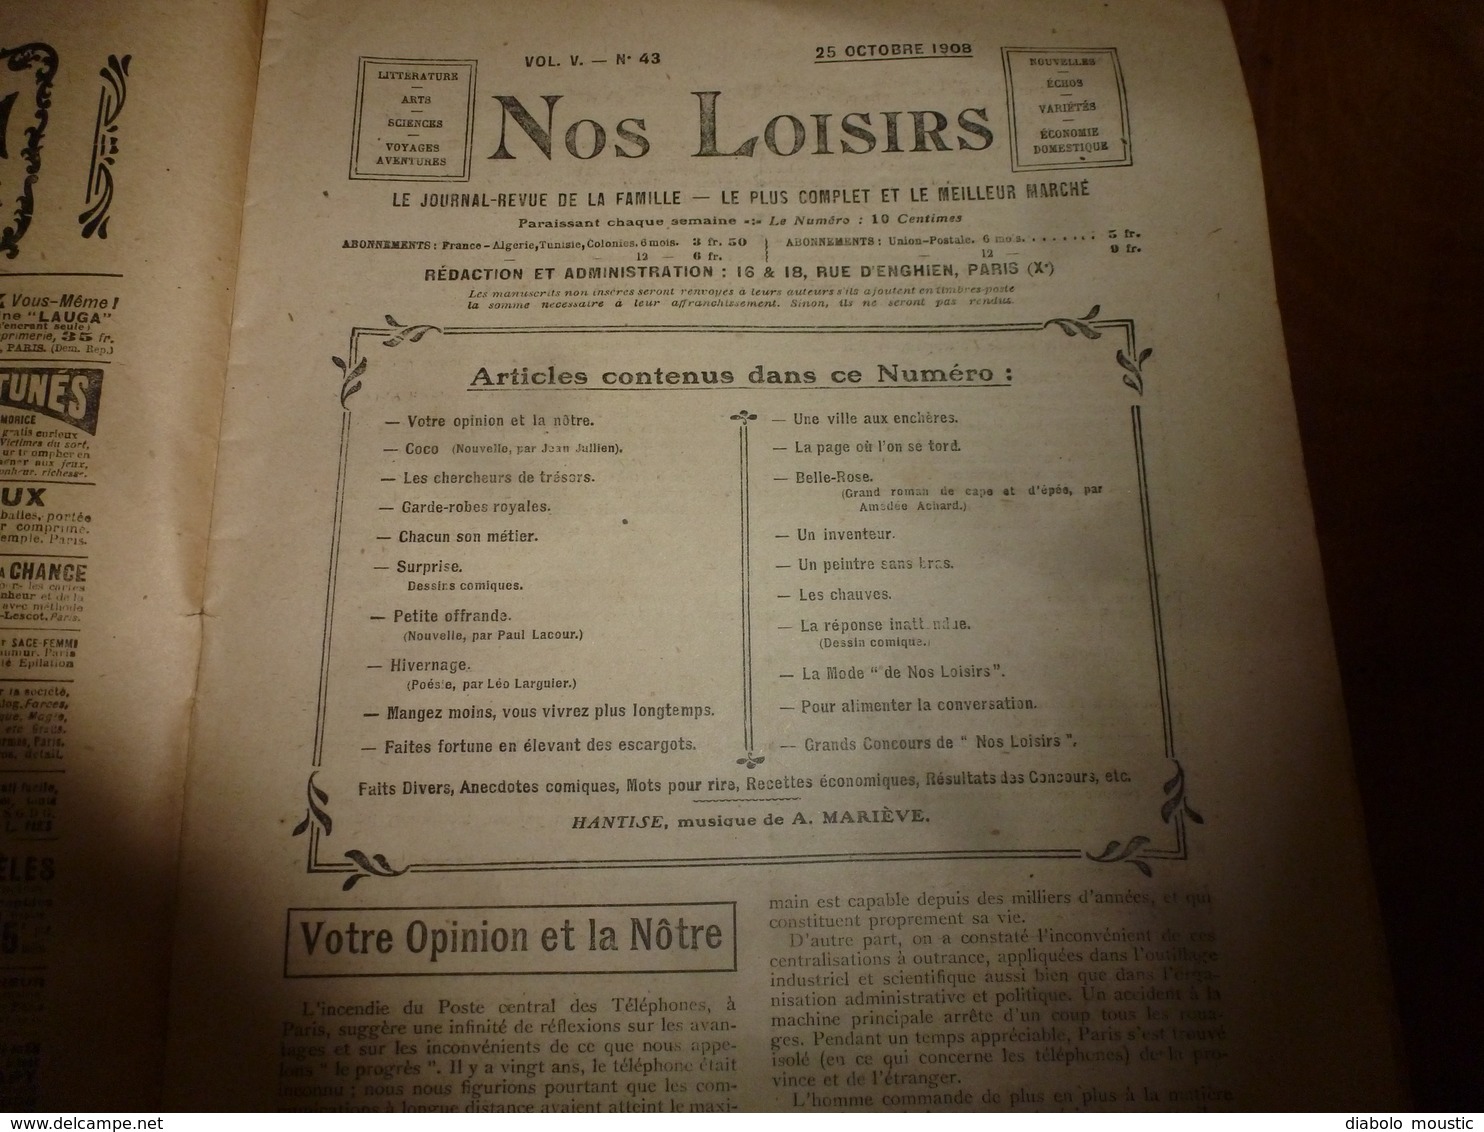 1908 NOS LOISIRS : Couv.de Fréjean;Chercheurs de trésors du lac Némi;Pour vivre longtemps:Fortune avec les escargots;etc